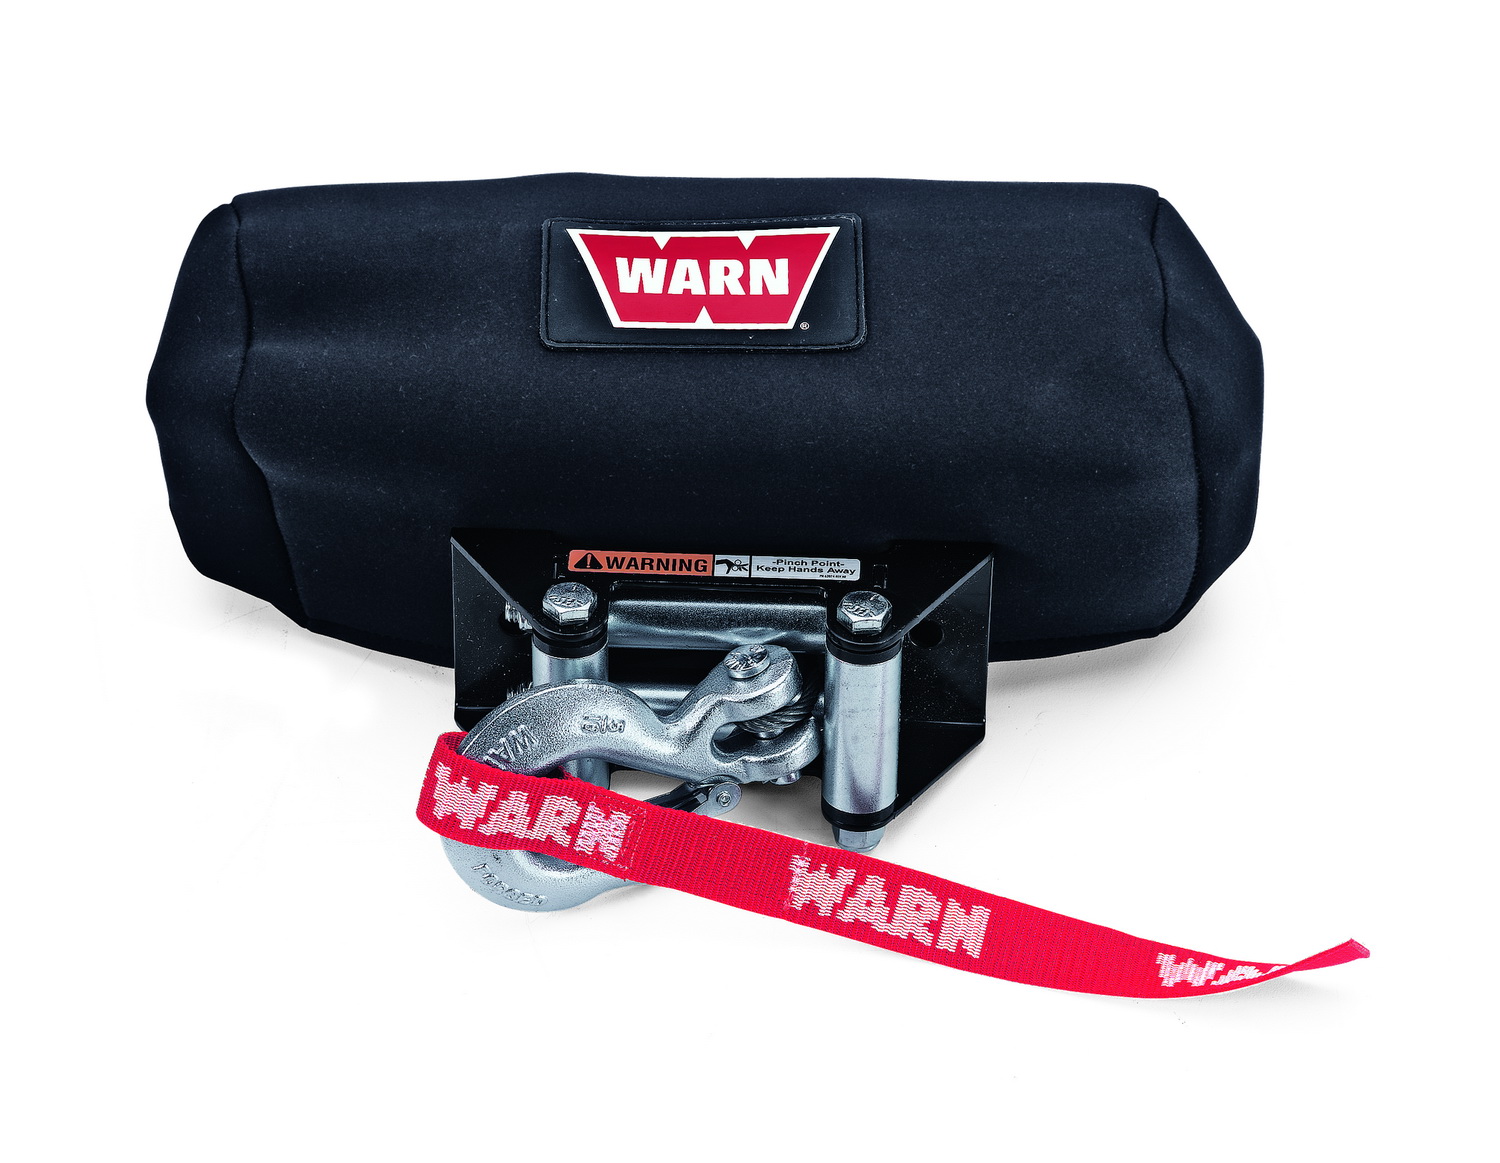 Warn Warn 71980 Neoprene Winch Cover